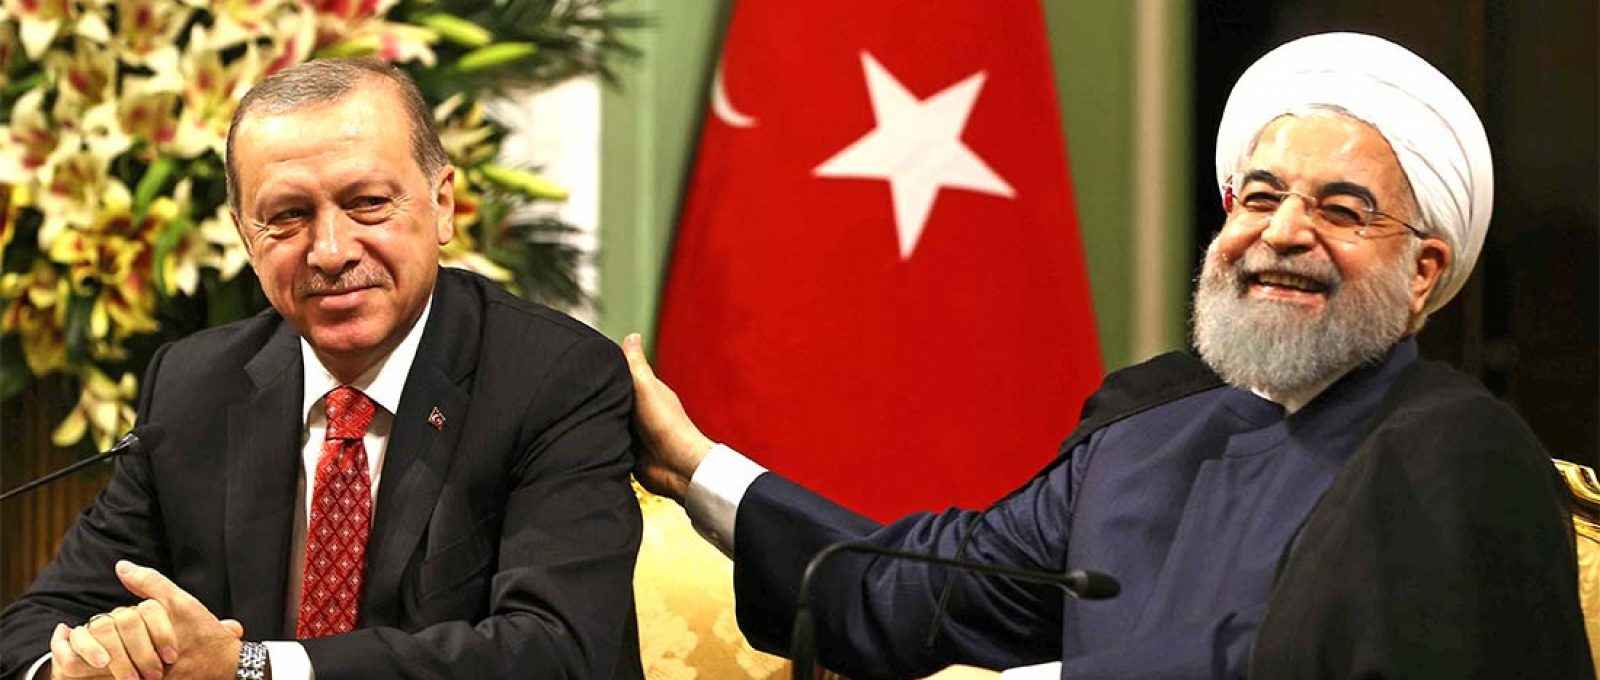 O presidente turco, Recep Tayyip Erdogan, e o então presidente iraniano, Hassan Rouhani, em Teerã, capital do Irã, em 4 de outubro de 2017 (Reuters).